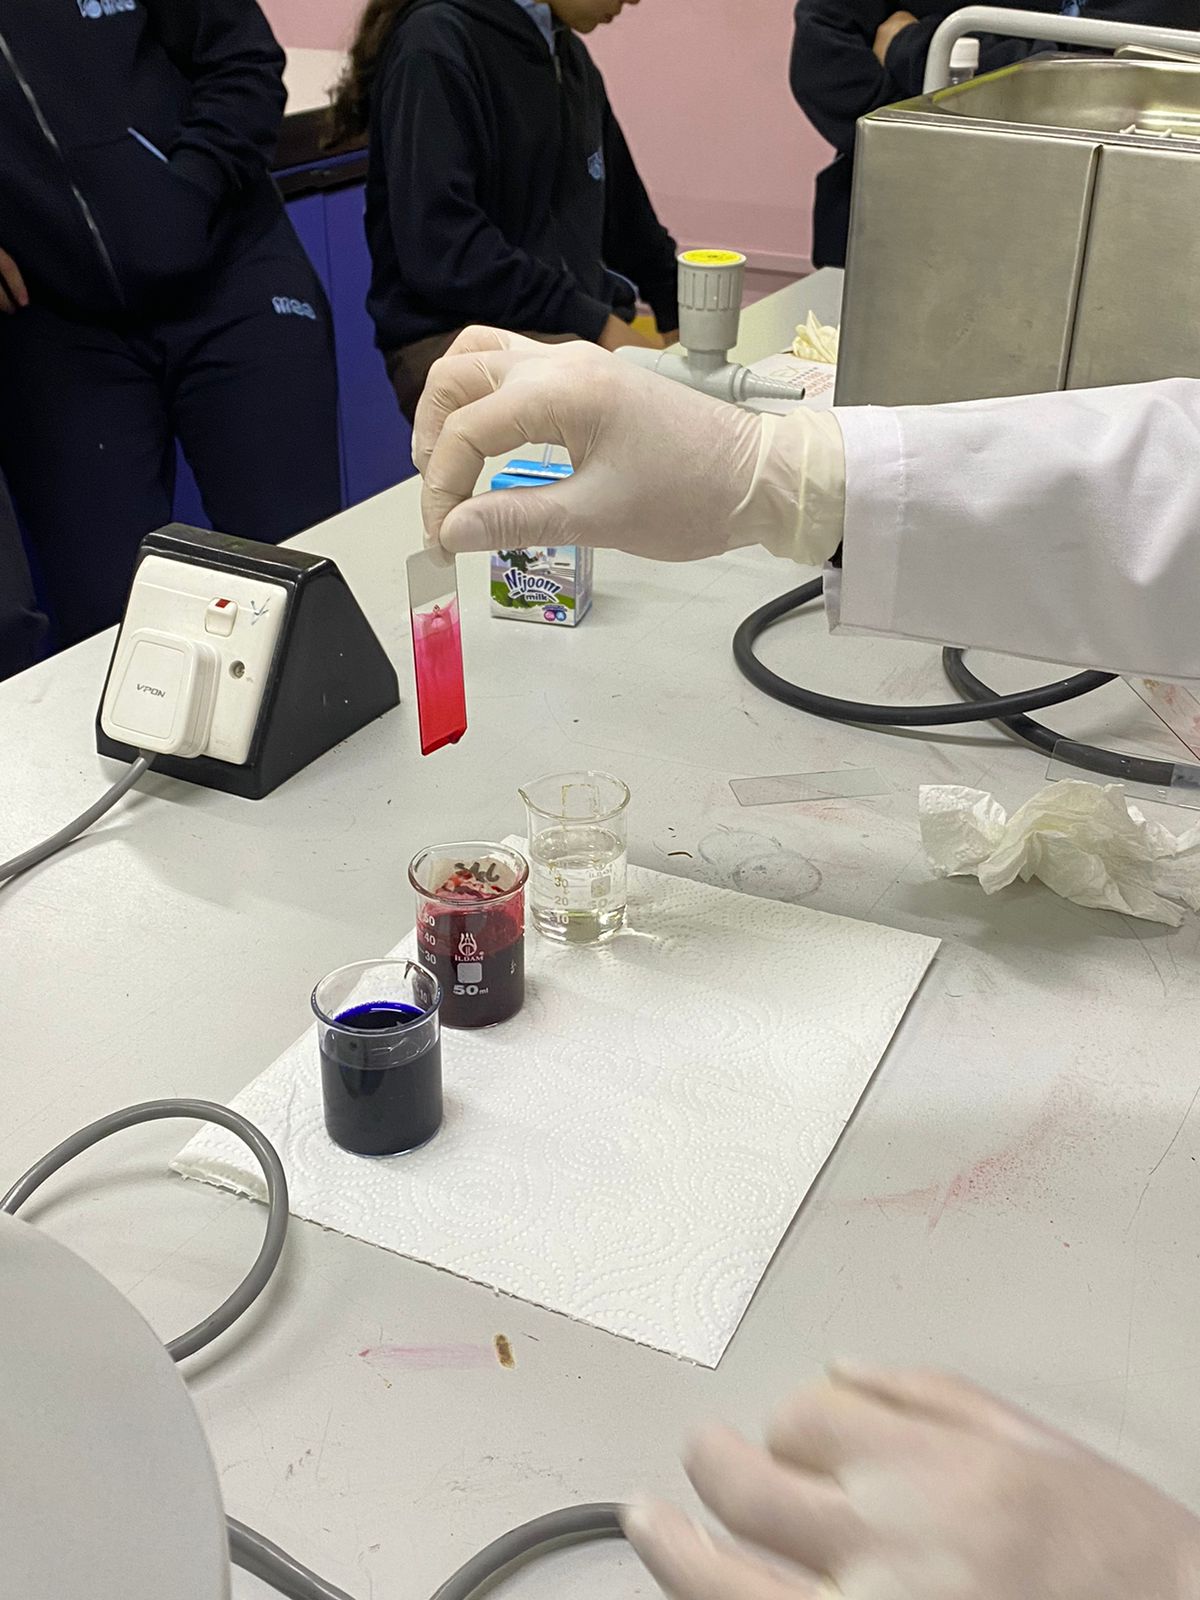 طالبات الصف الأول الثانوي في تجربة عملية لفصل الدم إلى مكوناته